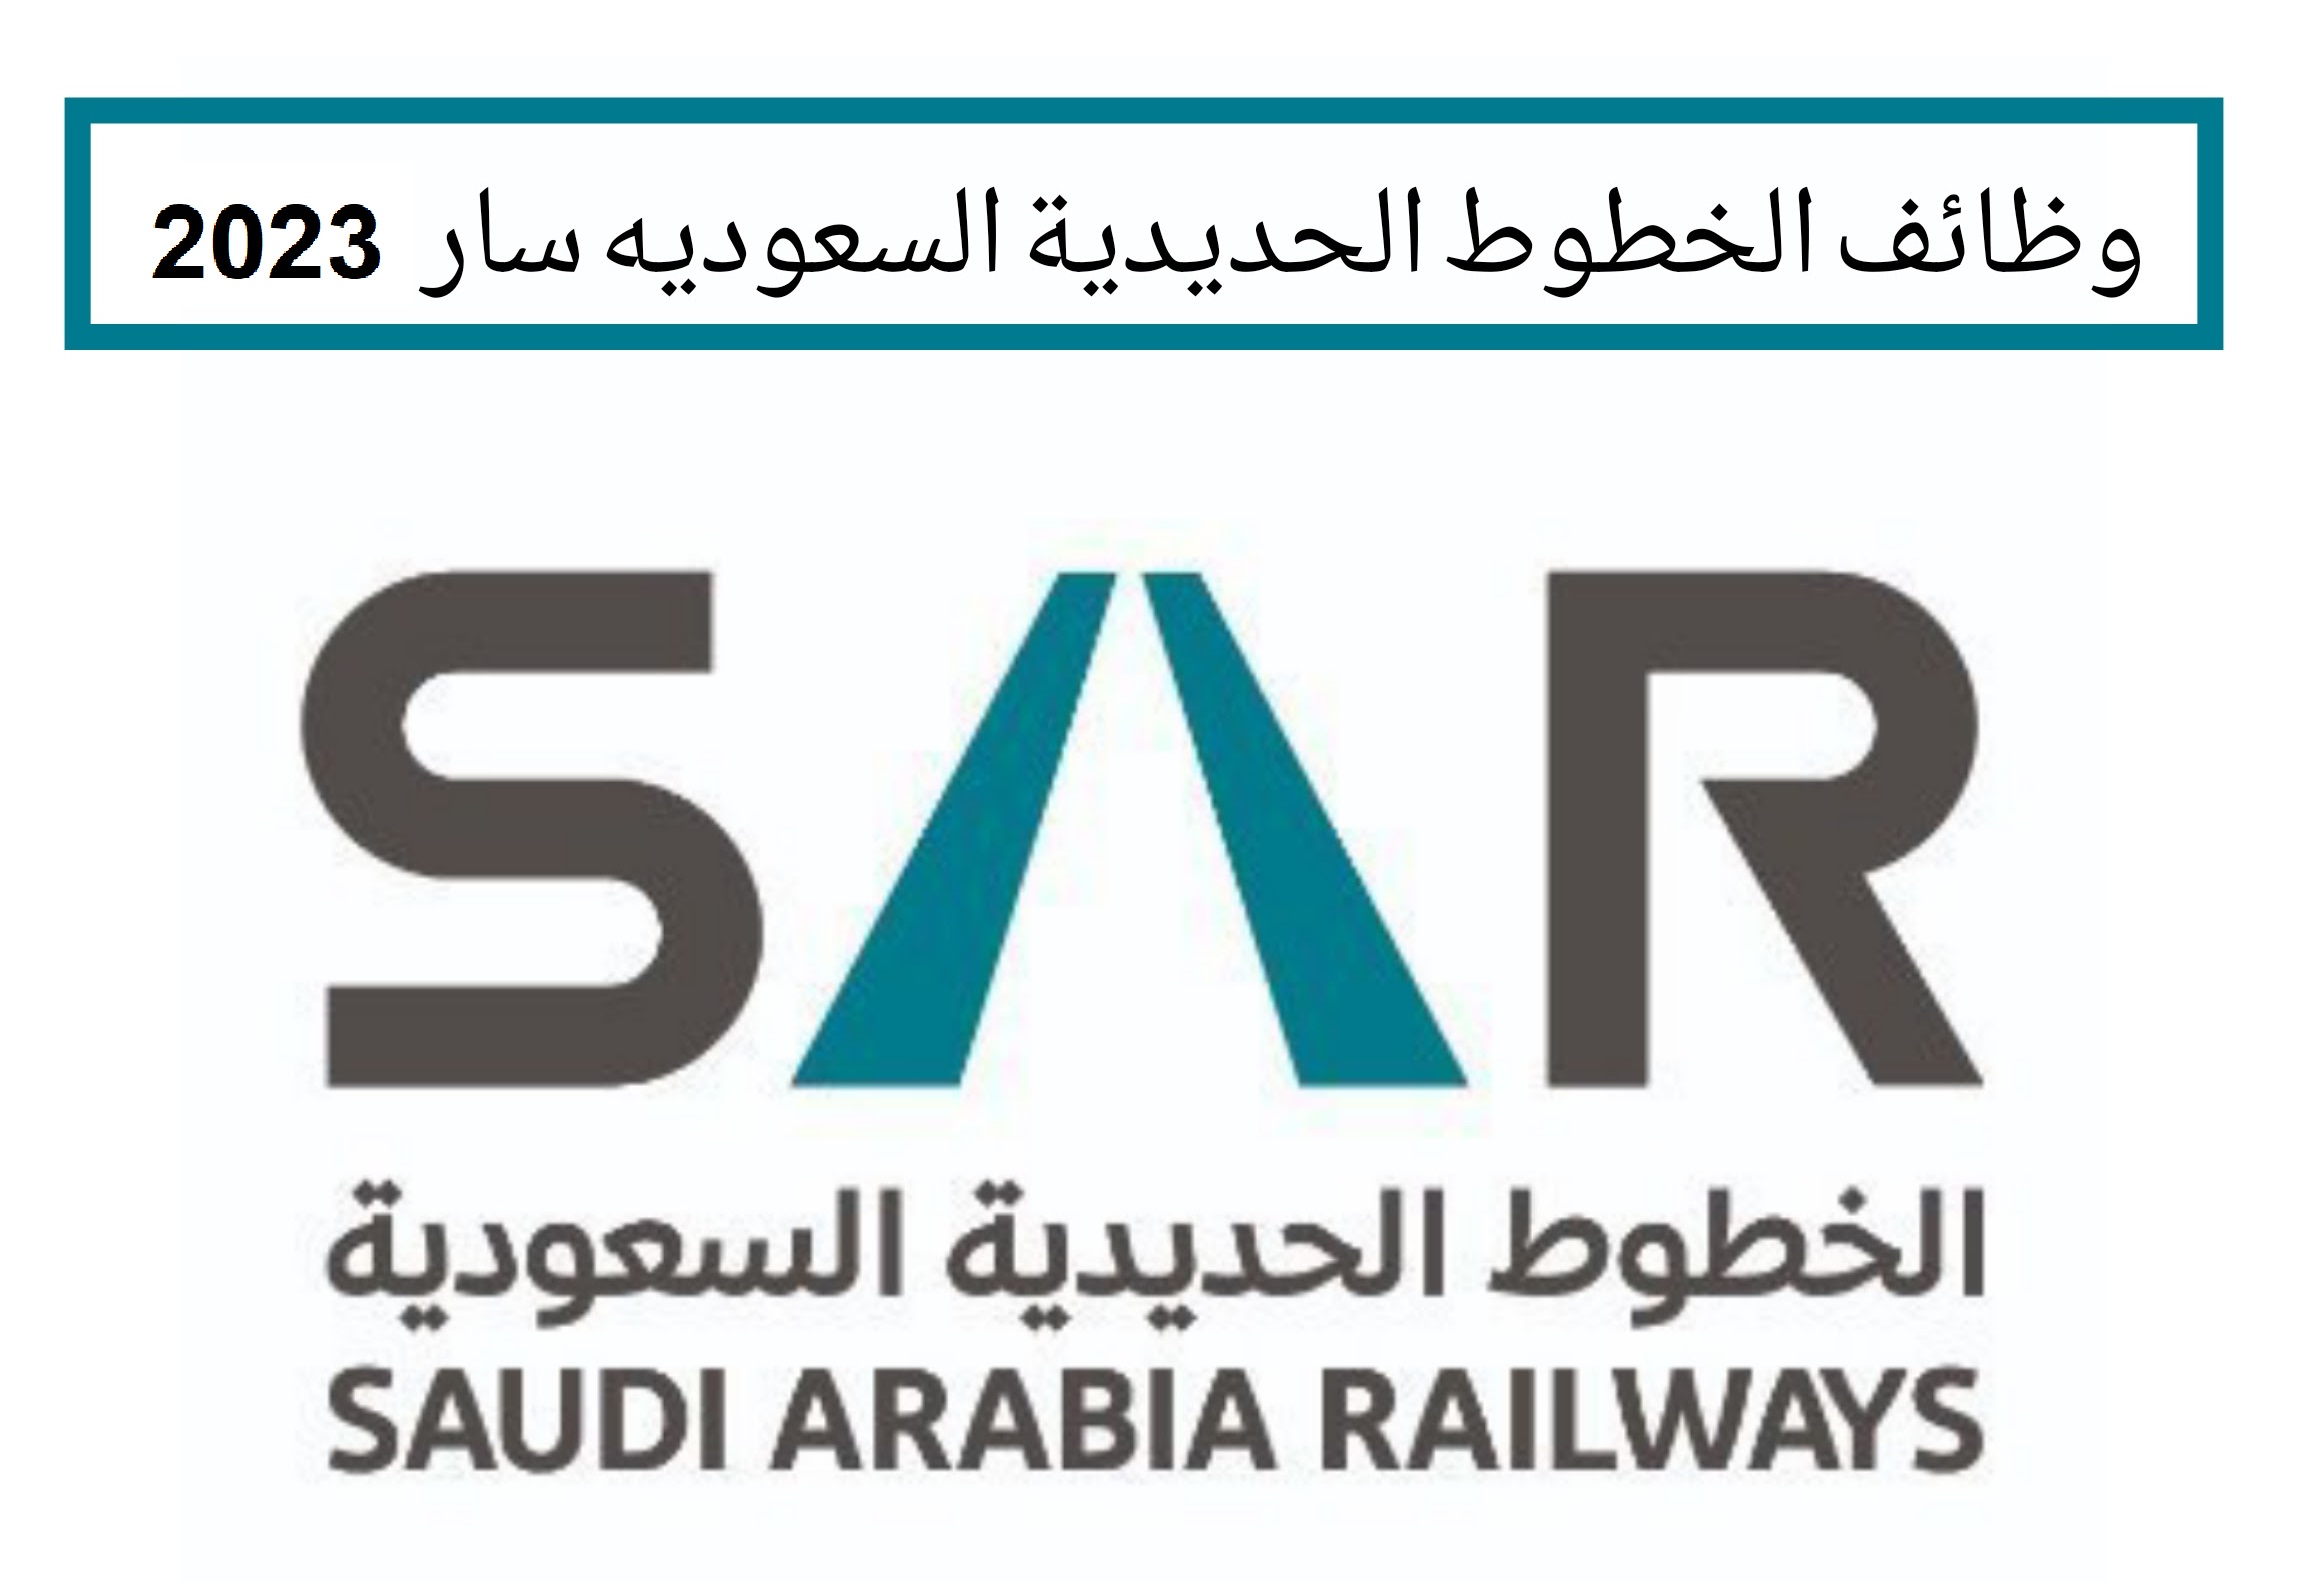 الشركة السعودية للخطوط الحديدية ” سار” تعلن عن وظائف شاغرة لحملة الدبلوم